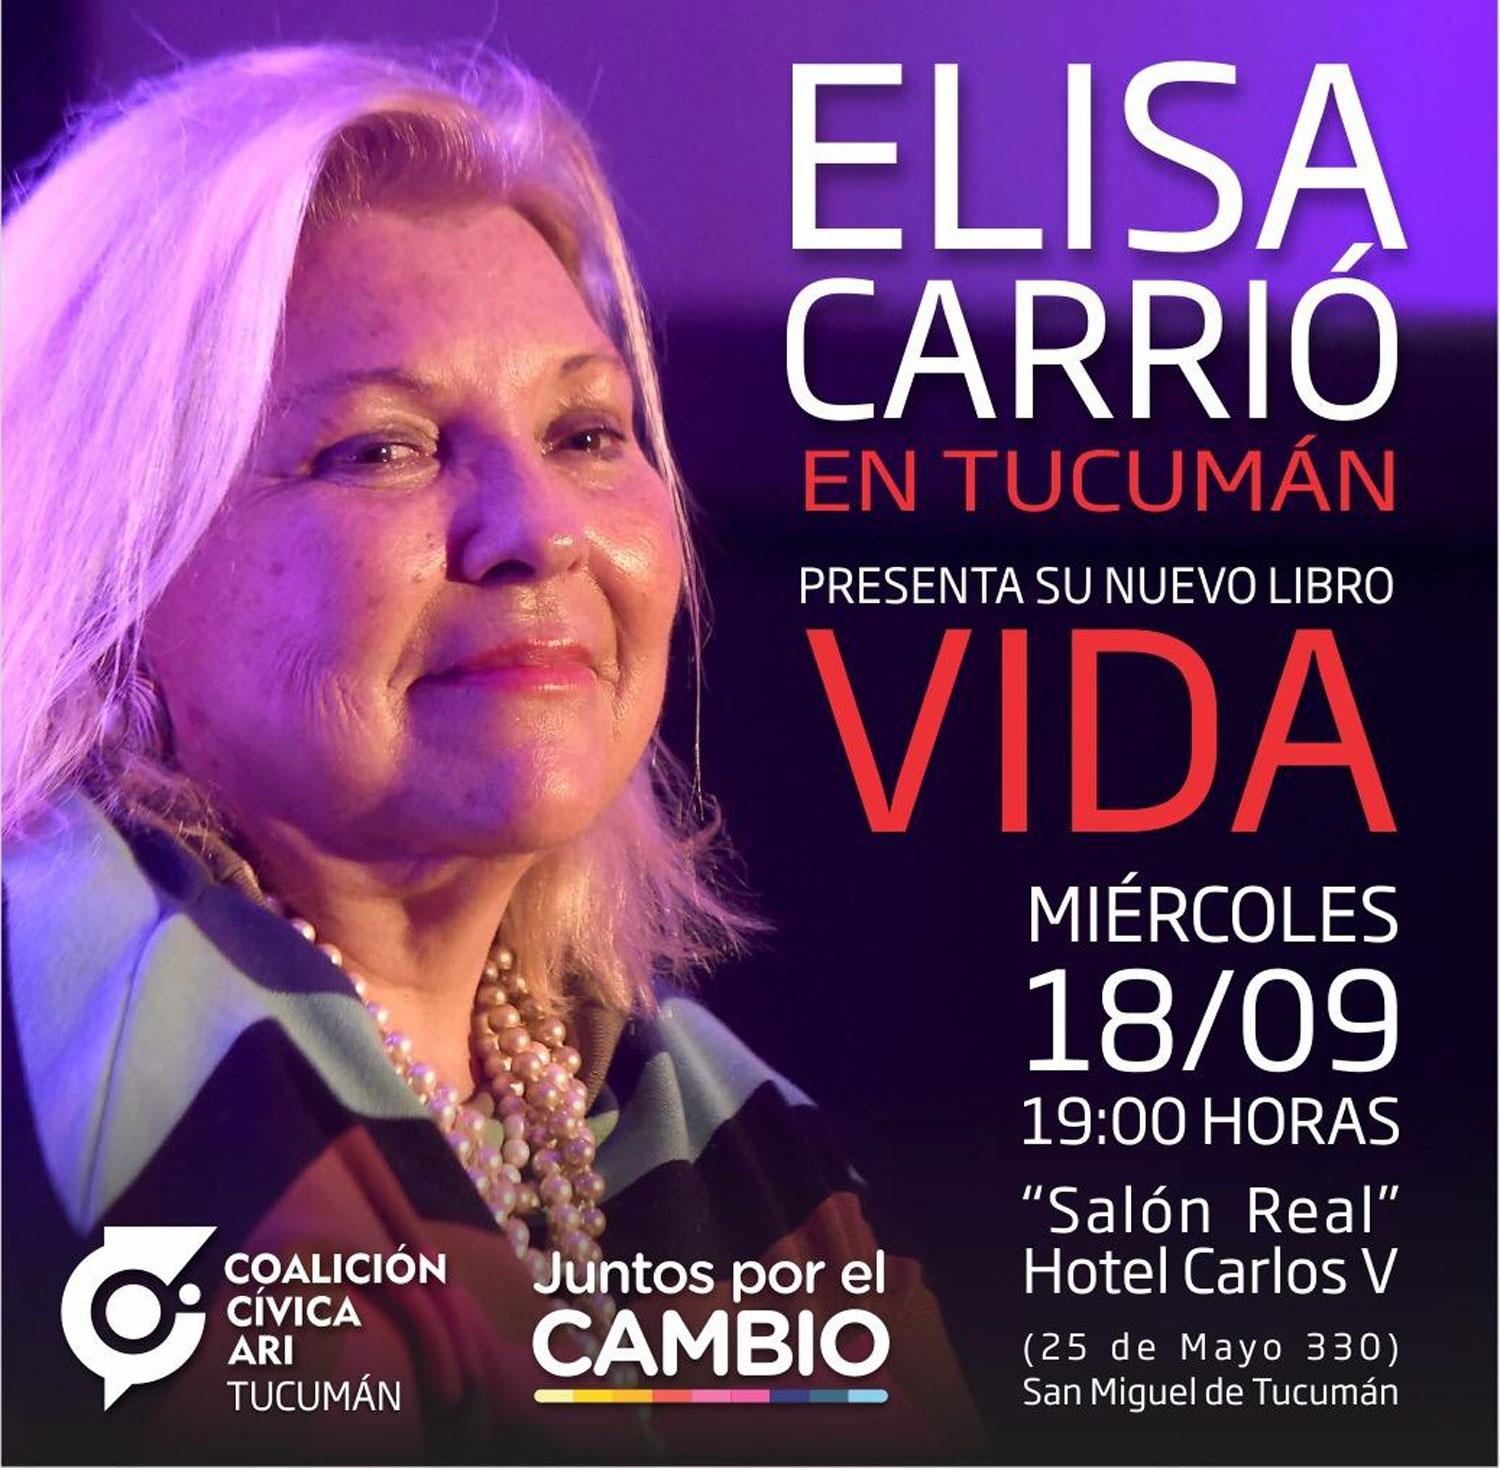 Elisa Carrió vendrá el miércoles a Tucumán para presentar su nuevo libro